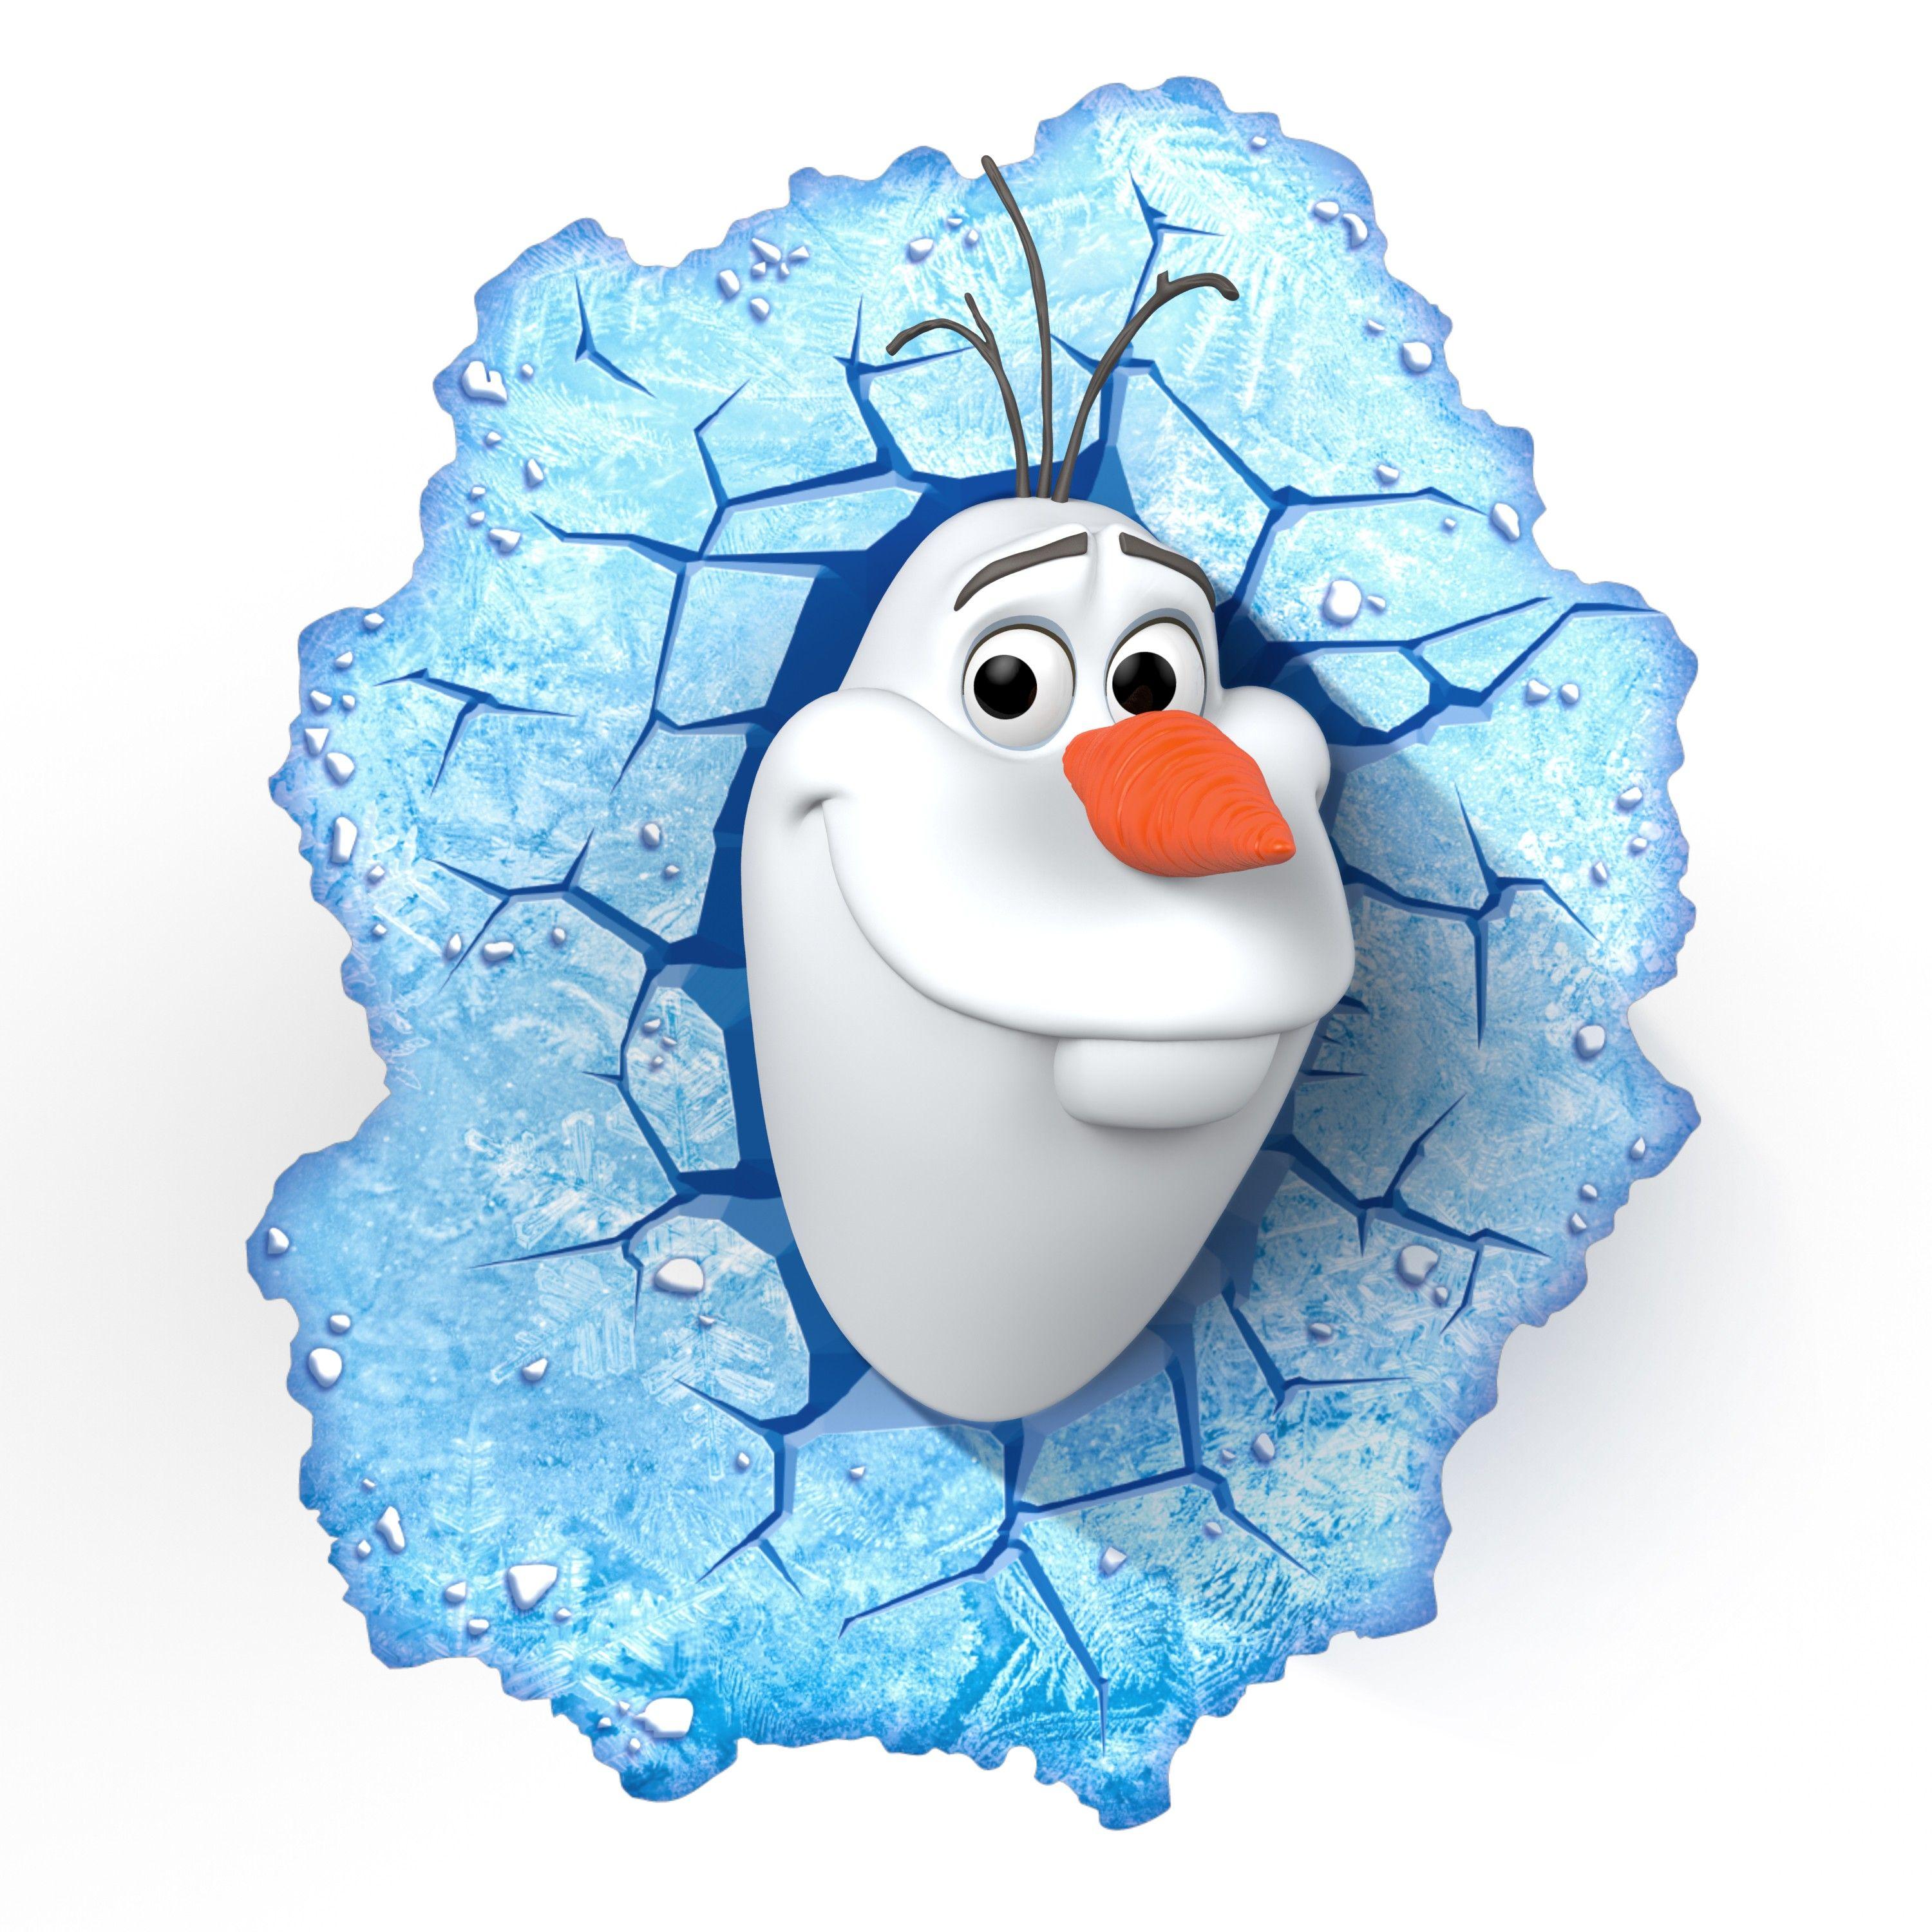 3000x3000px 1029.4 KB Frozen Olaf